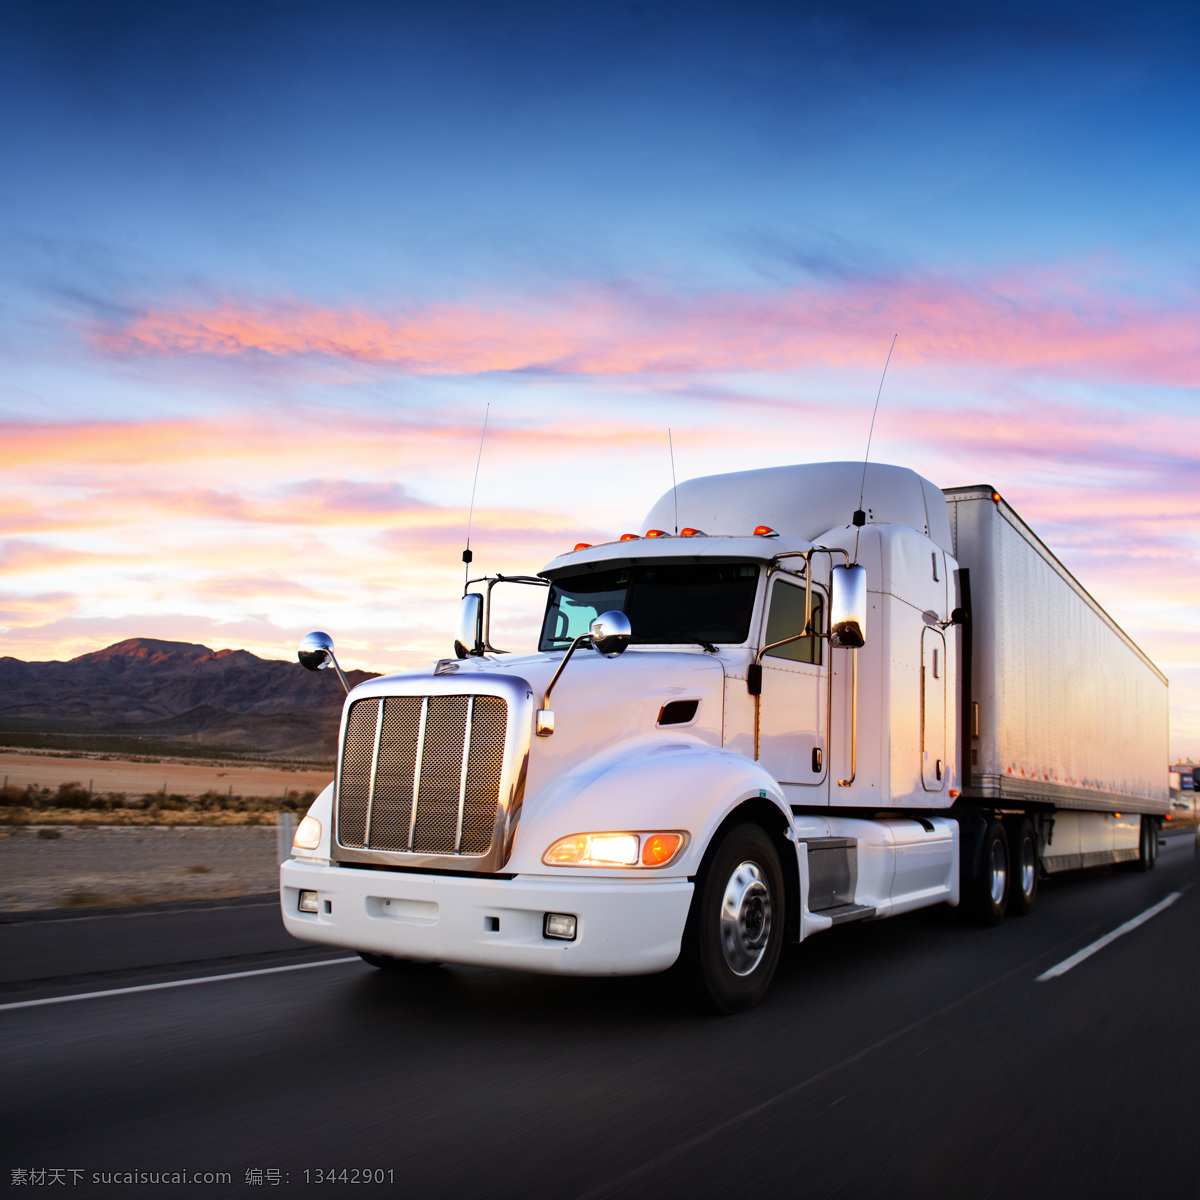 公路 上 白色 重型 货车 重型货车 汽车 运输 交通工具 汽车图片 现代科技